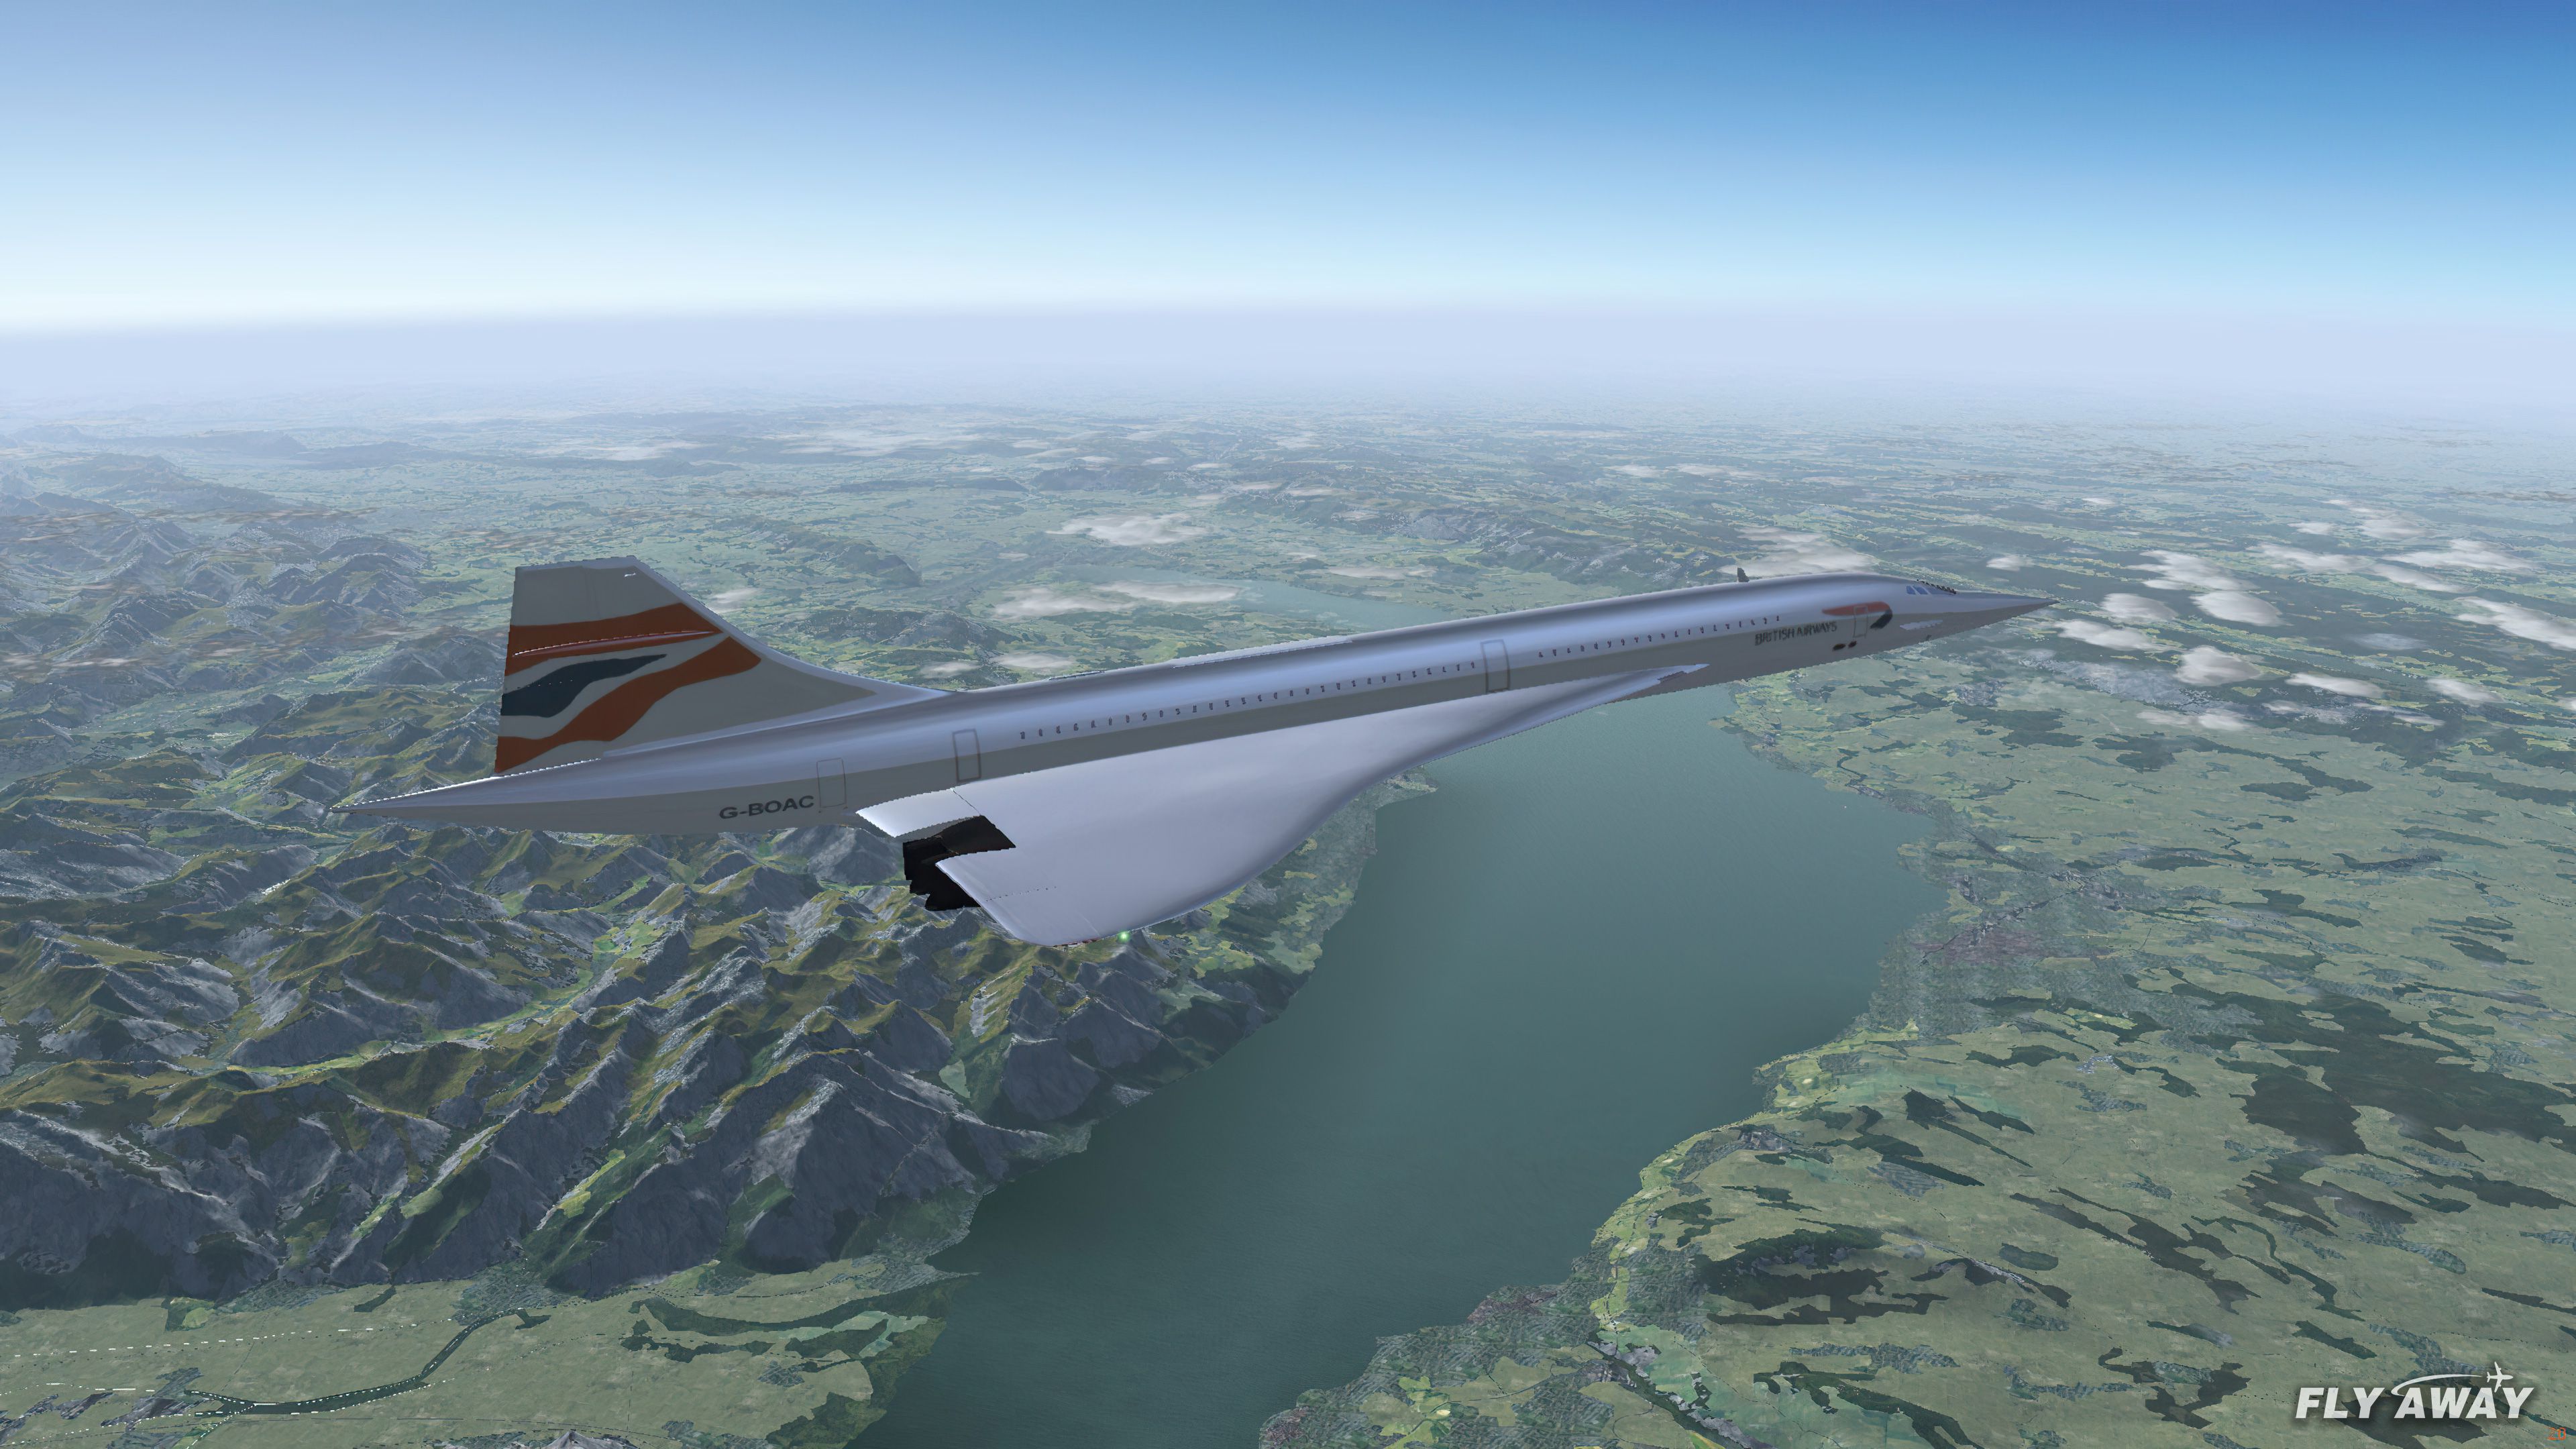  FlightGear Flight Simulator 2022 X Flight Sim Plane